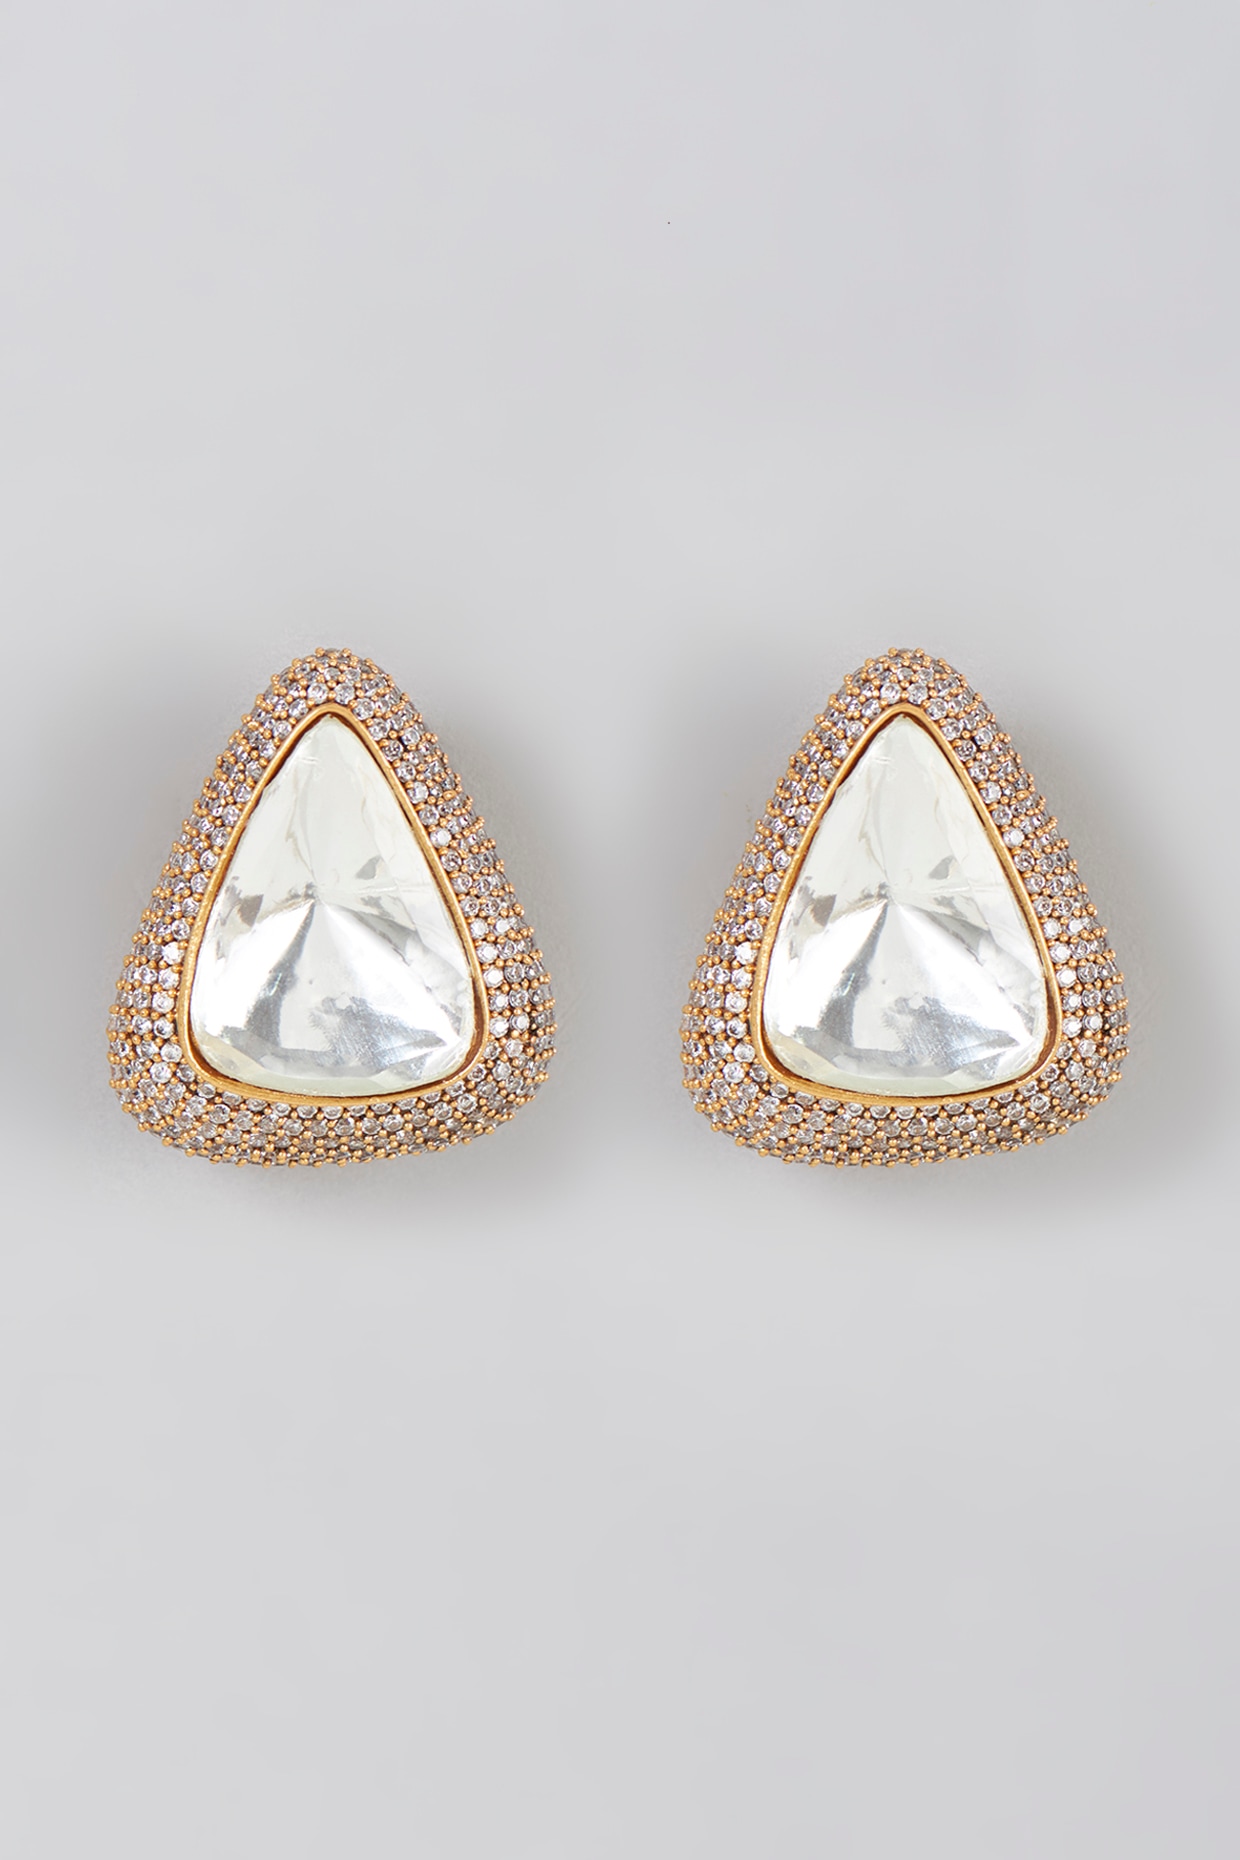 4CTTW Simulated Diamond Stud Earrings | Atlanta Diamond Design